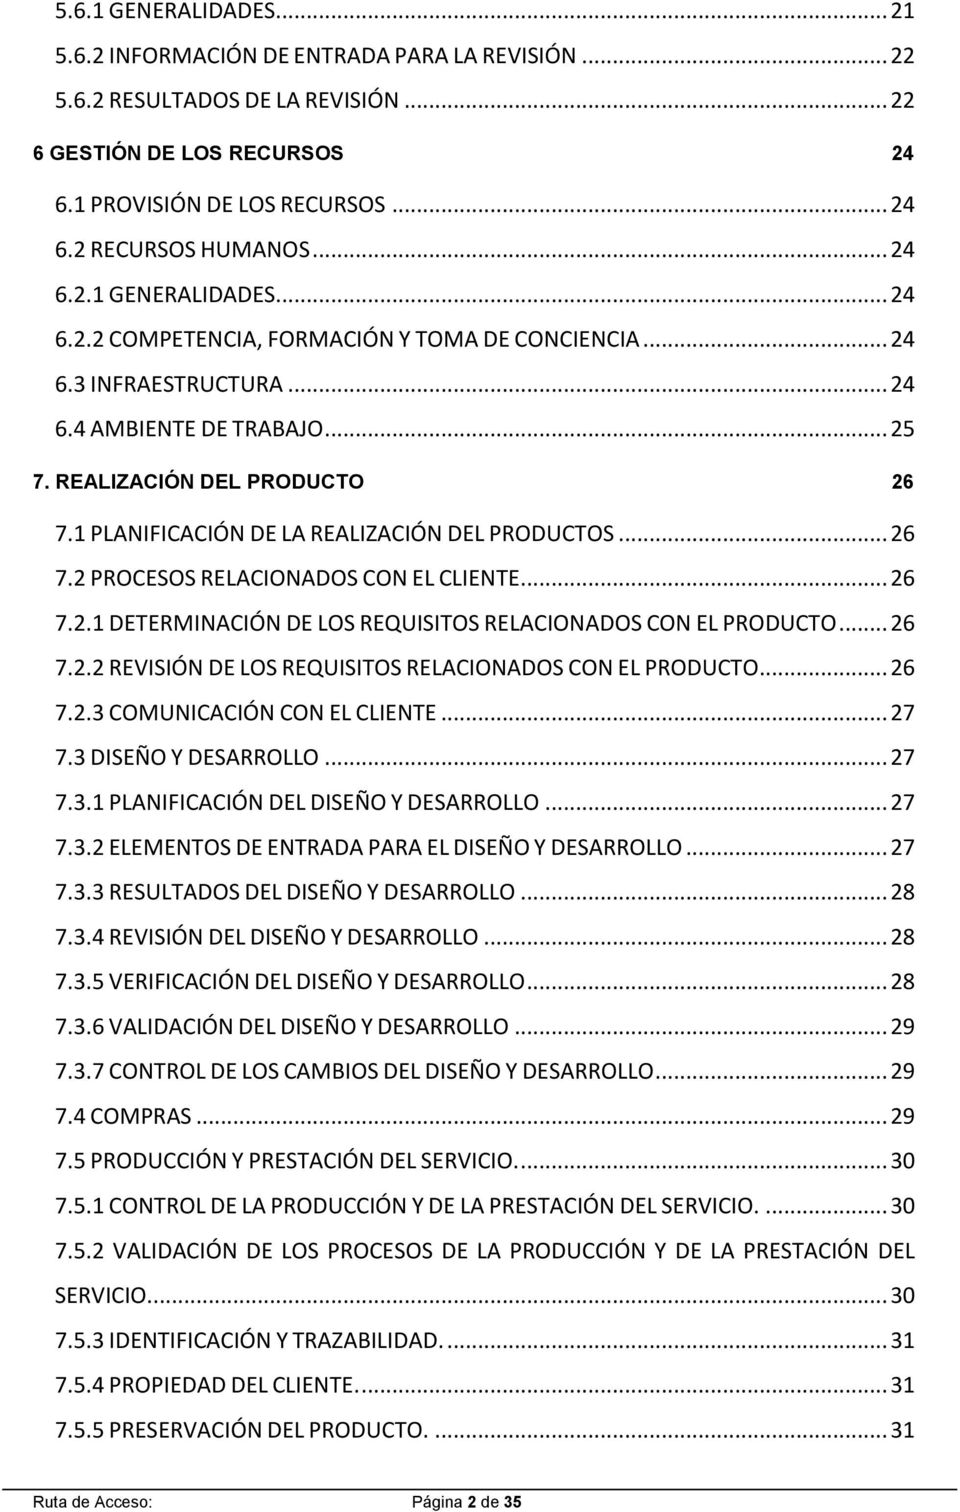 1 PLANIFICACIÓN DE LA REALIZACIÓN DEL PRODUCTOS... 26 7.2 PROCESOS RELACIONADOS CON EL CLIENTE... 26 7.2.1 DETERMINACIÓN DE LOS REQUISITOS RELACIONADOS CON EL PRODUCTO... 26 7.2.2 REVISIÓN DE LOS REQUISITOS RELACIONADOS CON EL PRODUCTO.